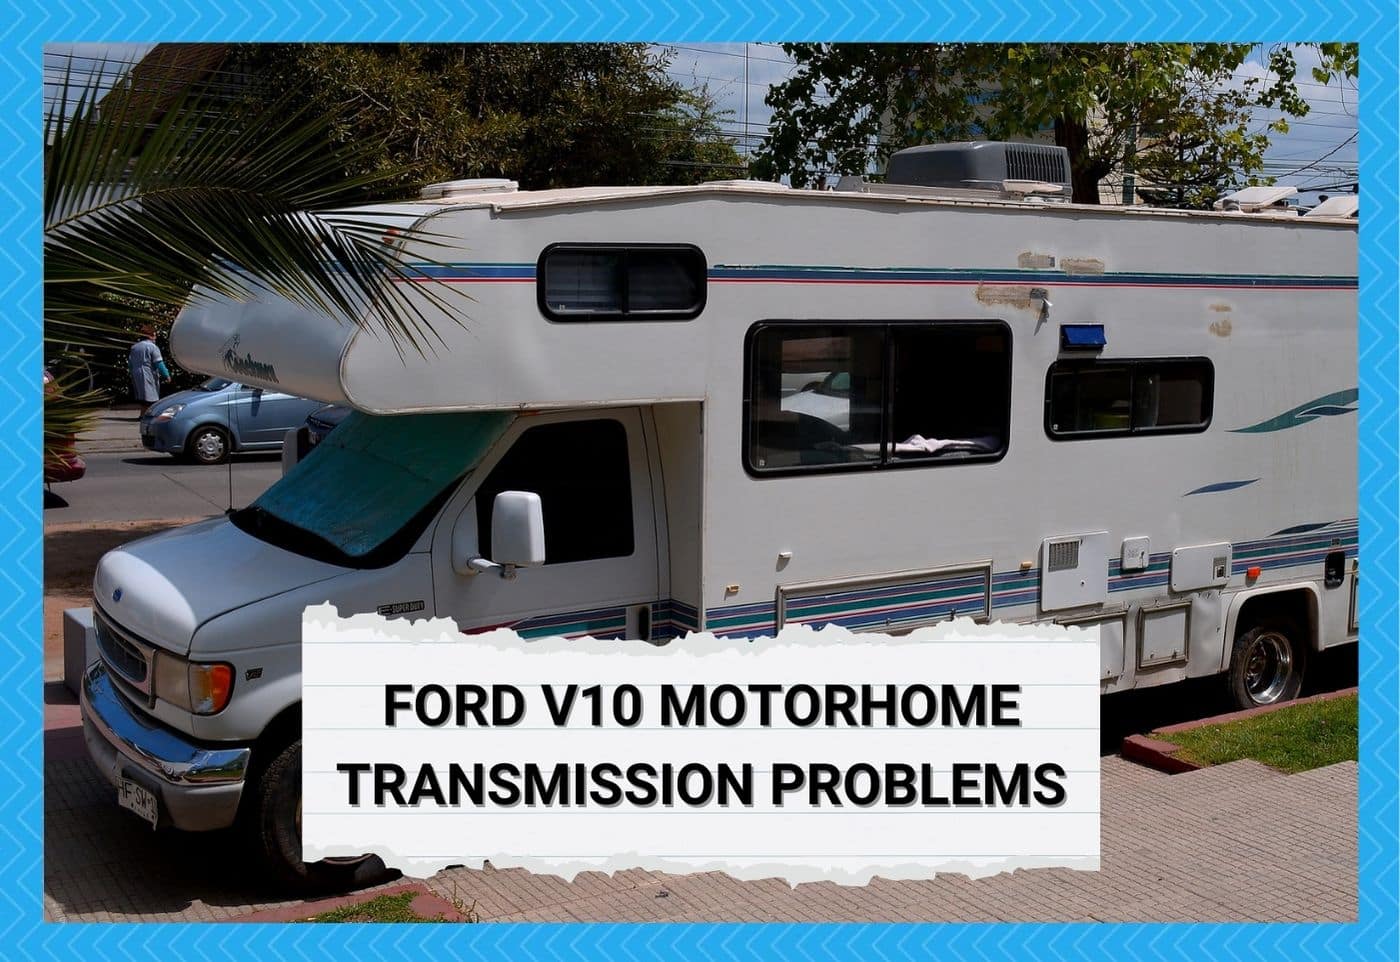 Ford V10 Motorhome Transmission Problems